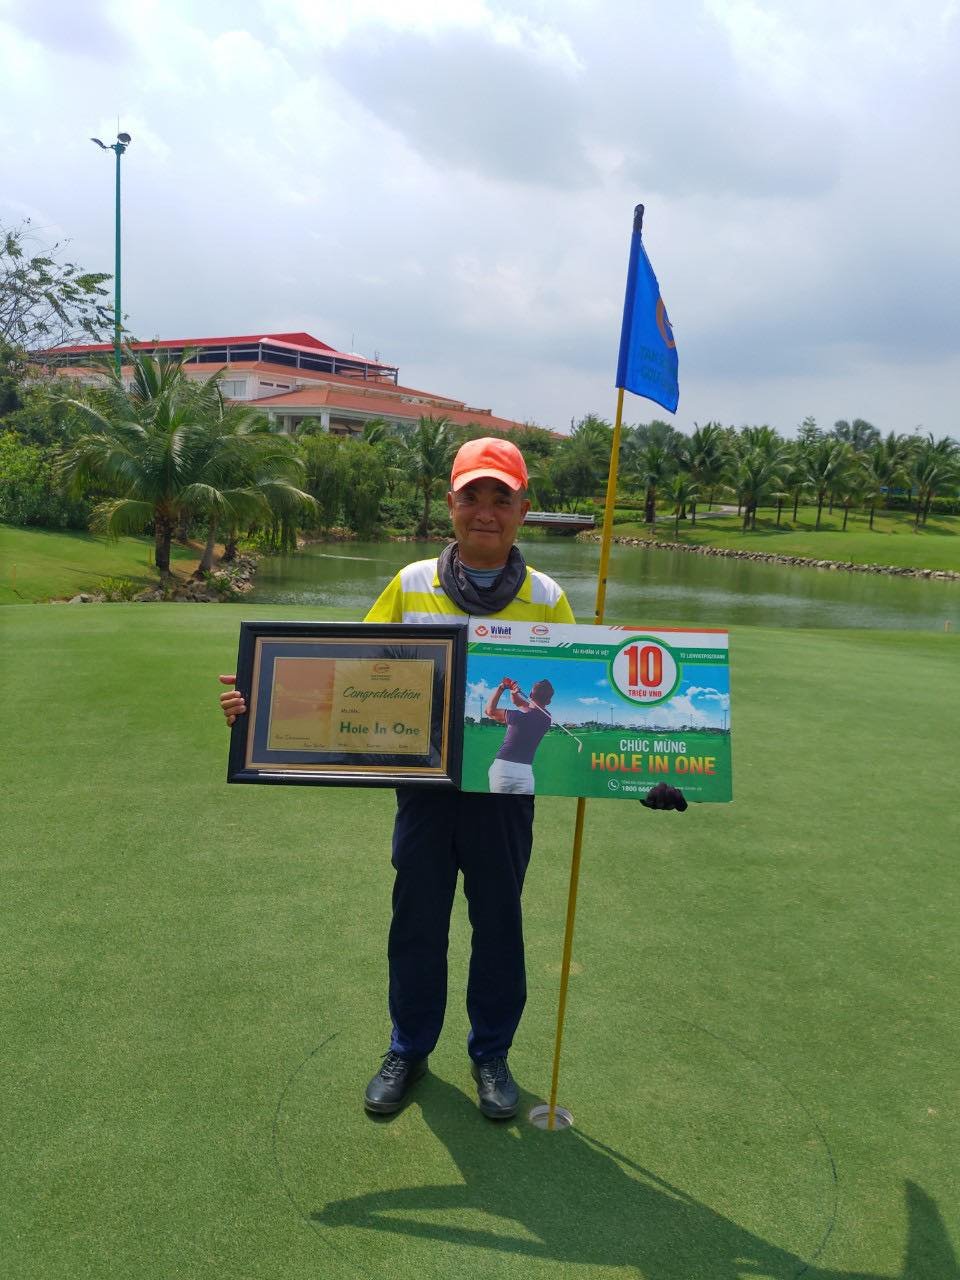 Sử dụng gói dịch vụ của VGS Sport, golfer Ngô Tuấn Anh trúng 100 triệu đồng